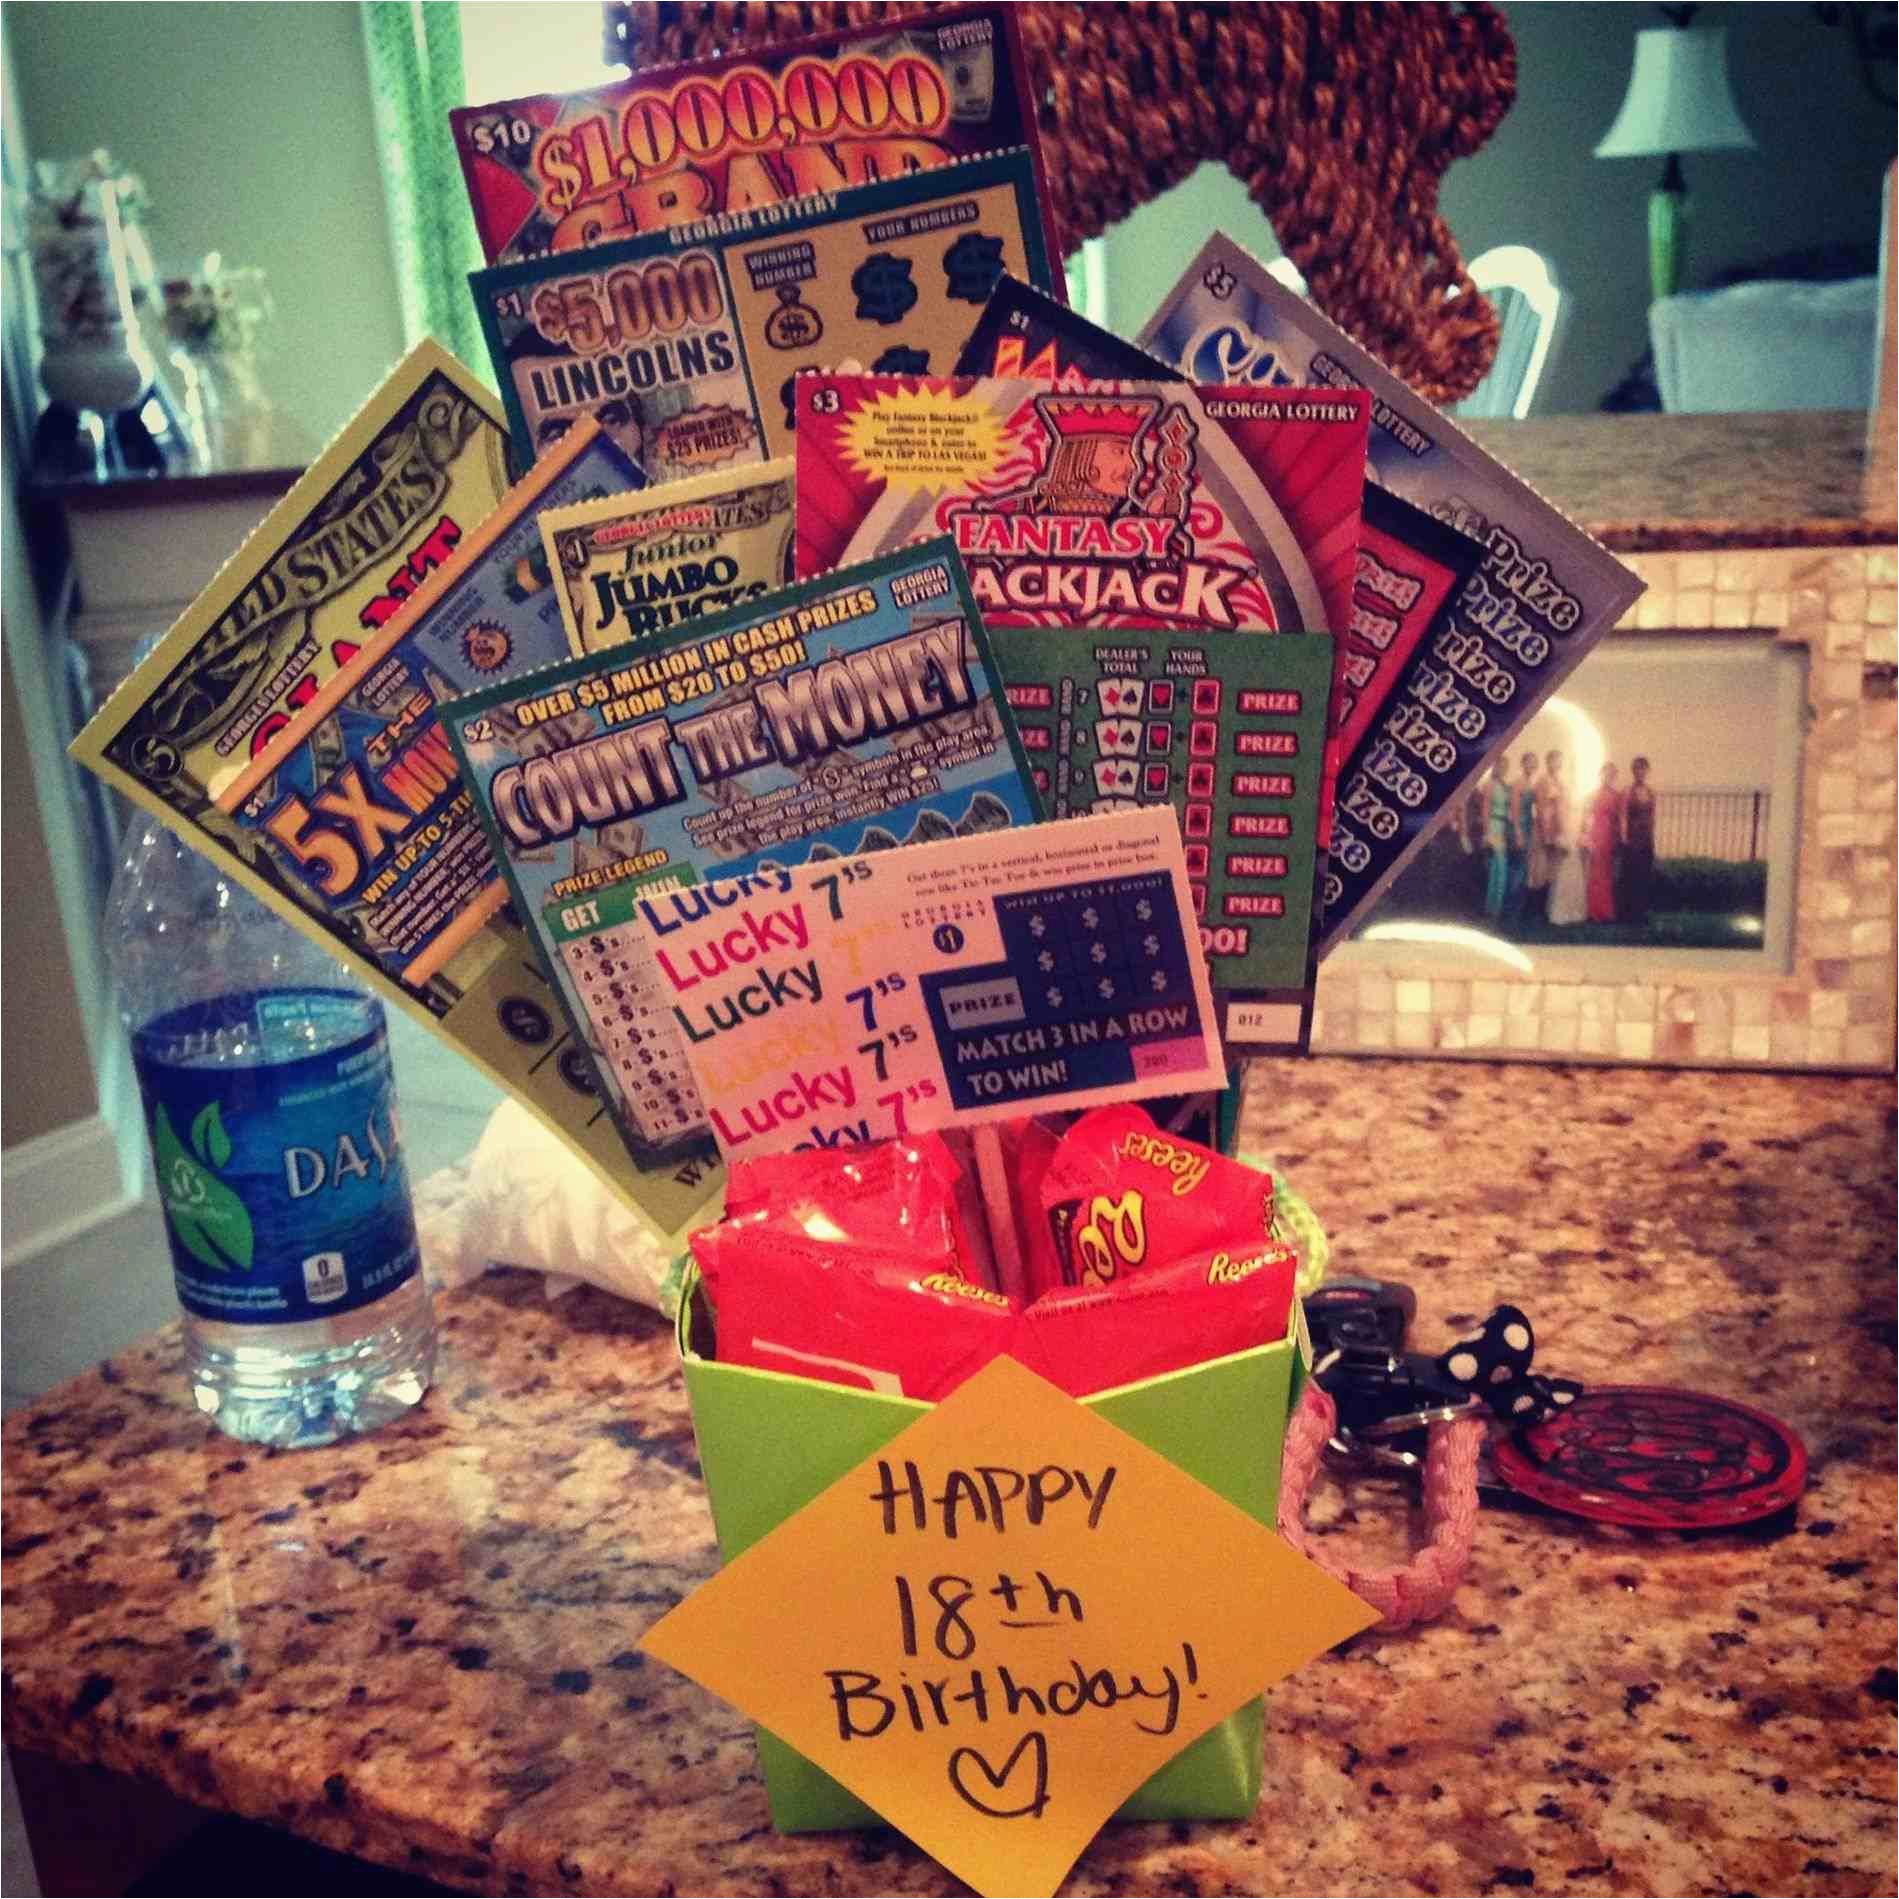 18th birthday gift ideas for boyfriend